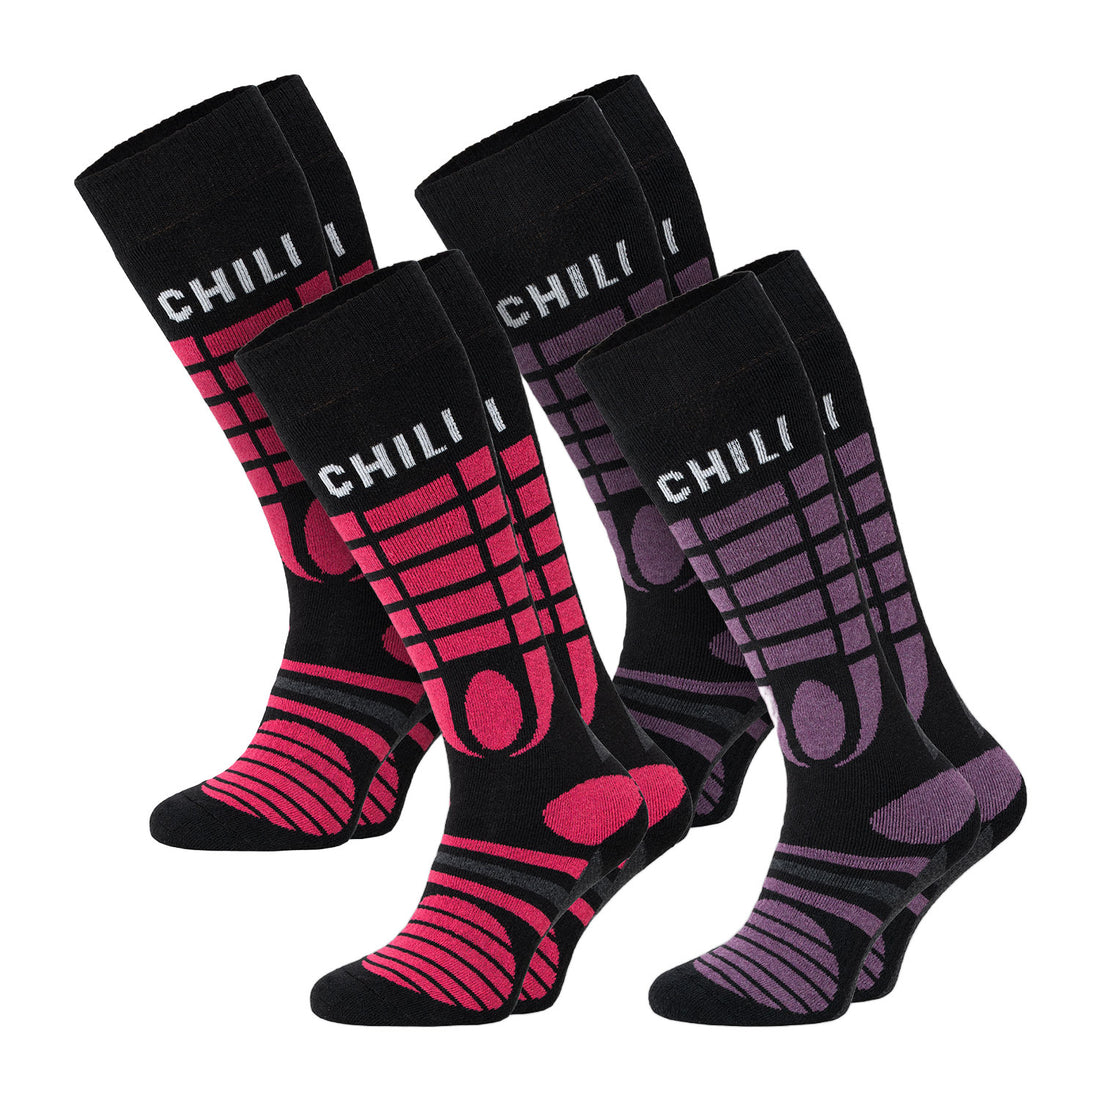 ChiliLifestyle Ski Knie Damen Socken, 4 Paar, Skisocken, Thermosocken